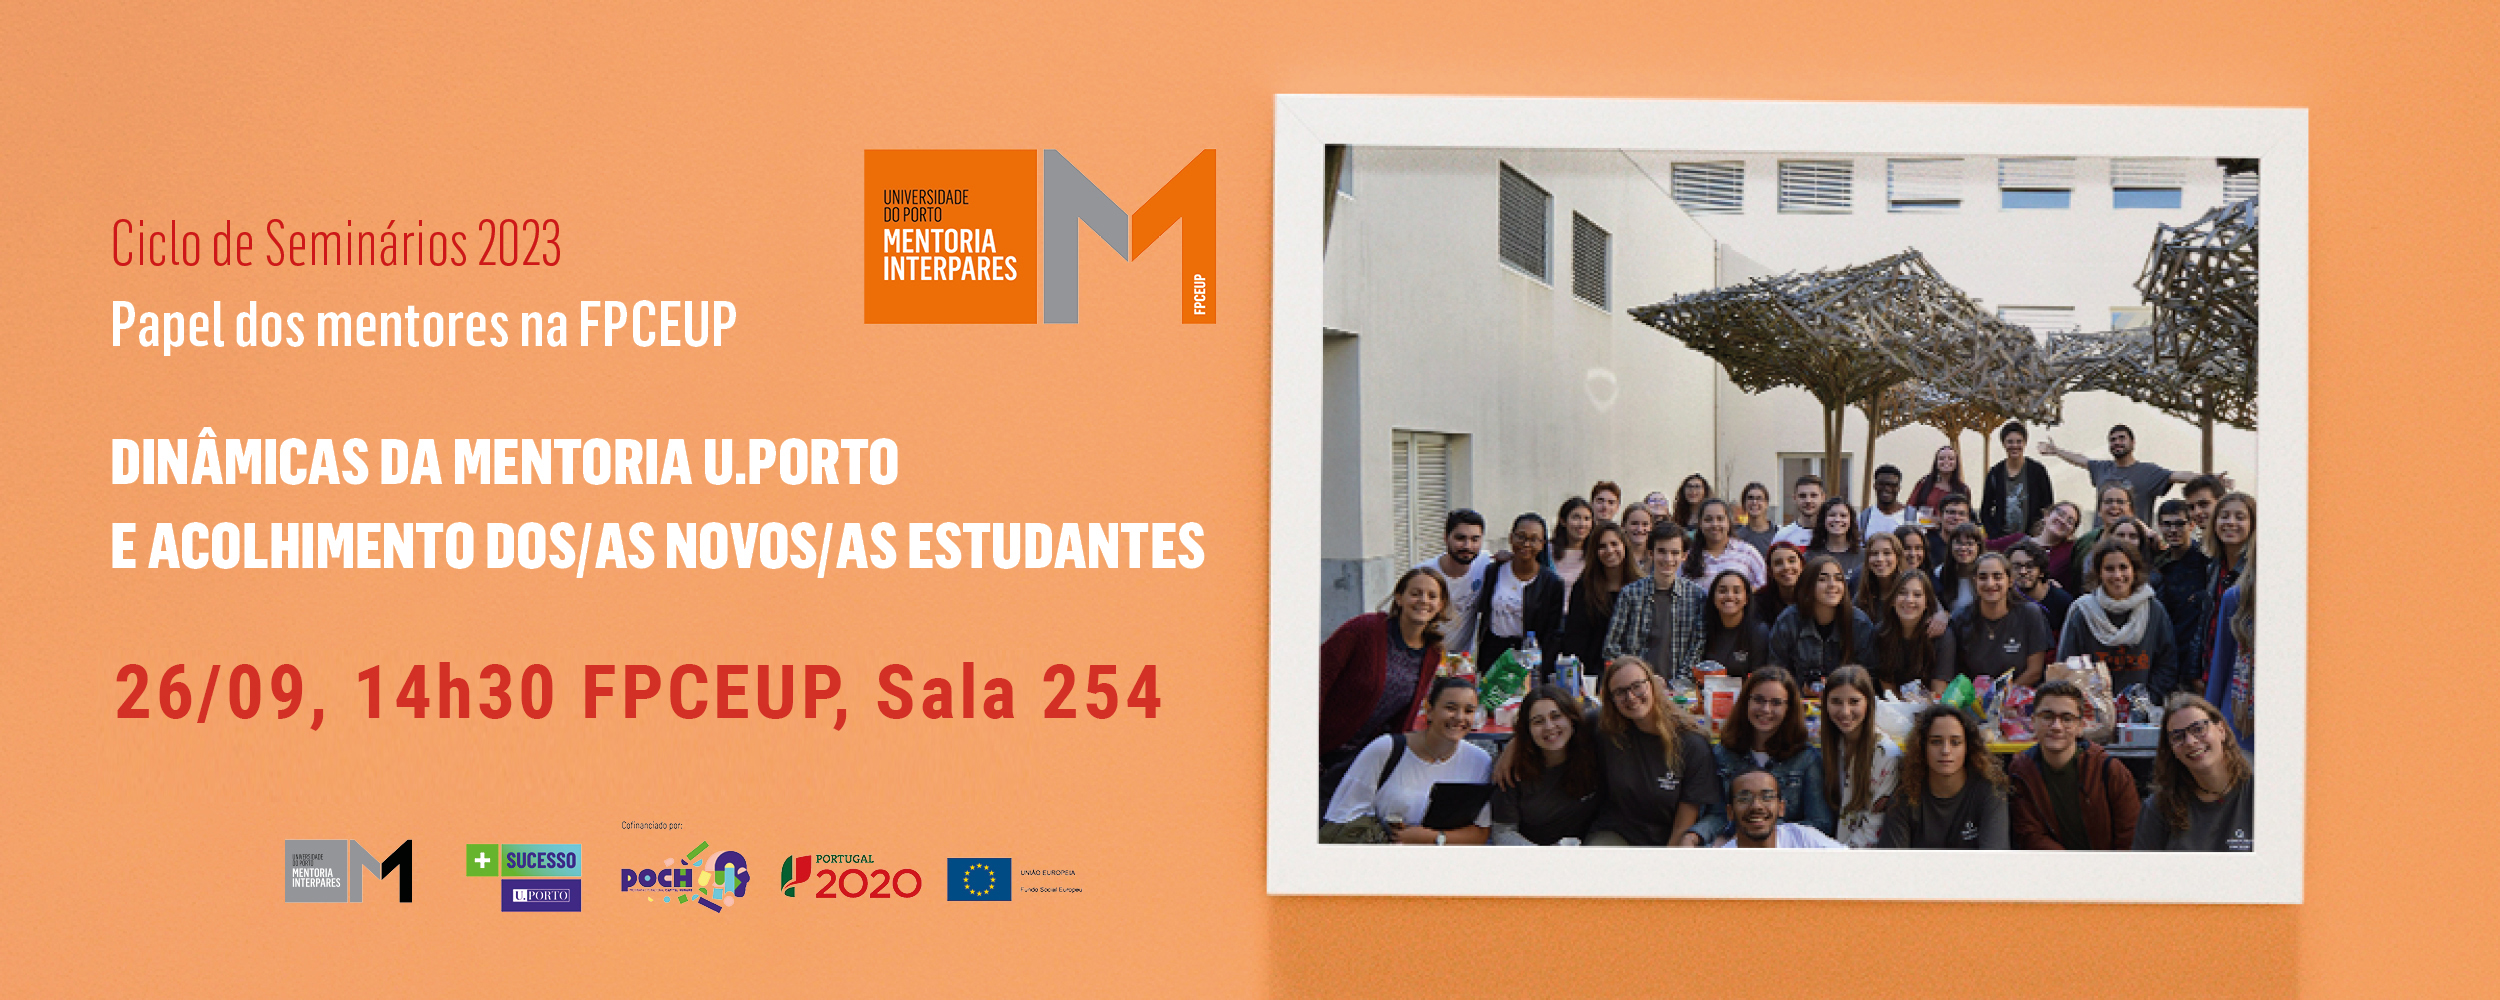 Seminário "Dinâmicas da Mentoria U.Porto e acolhimento dos novos estudantes: Papel dos mentores FPCEUP"